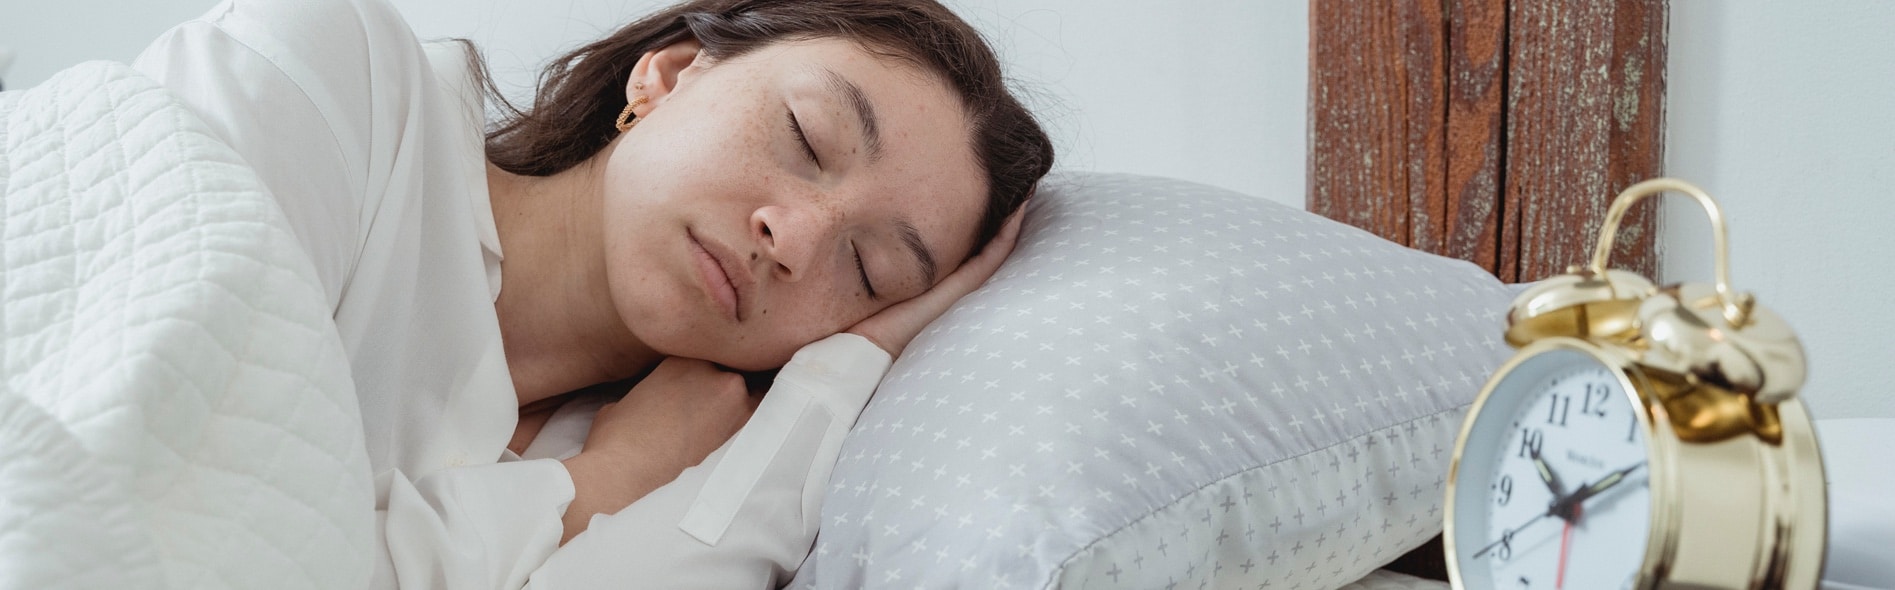 How To Reset Your Sleep Schedule